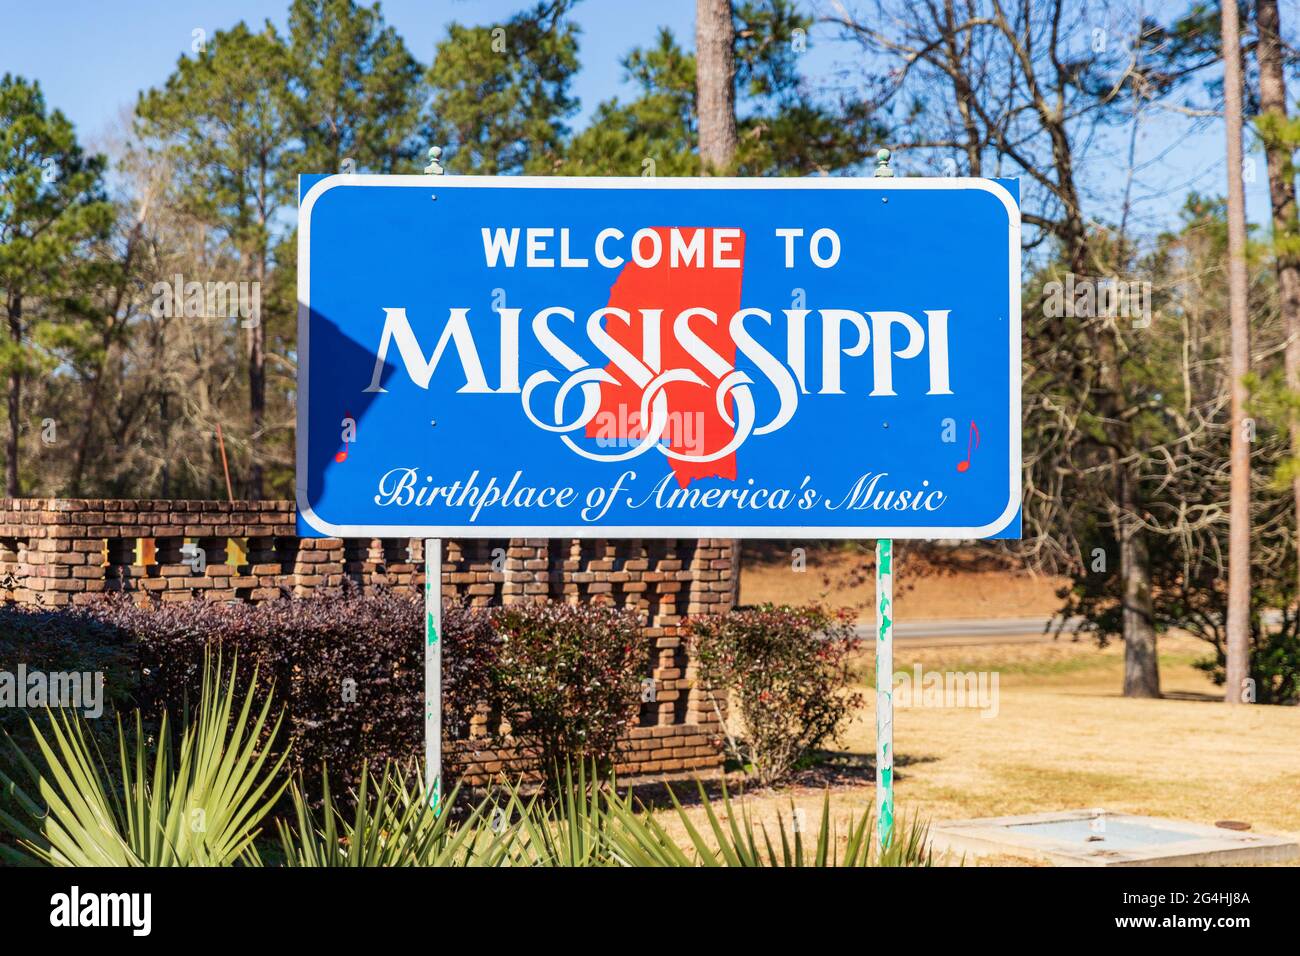 Magnolia, MS - 14 de enero de 2021: Bienvenido al signo de Mississippi, lugar de nacimiento de la música de América Foto de stock